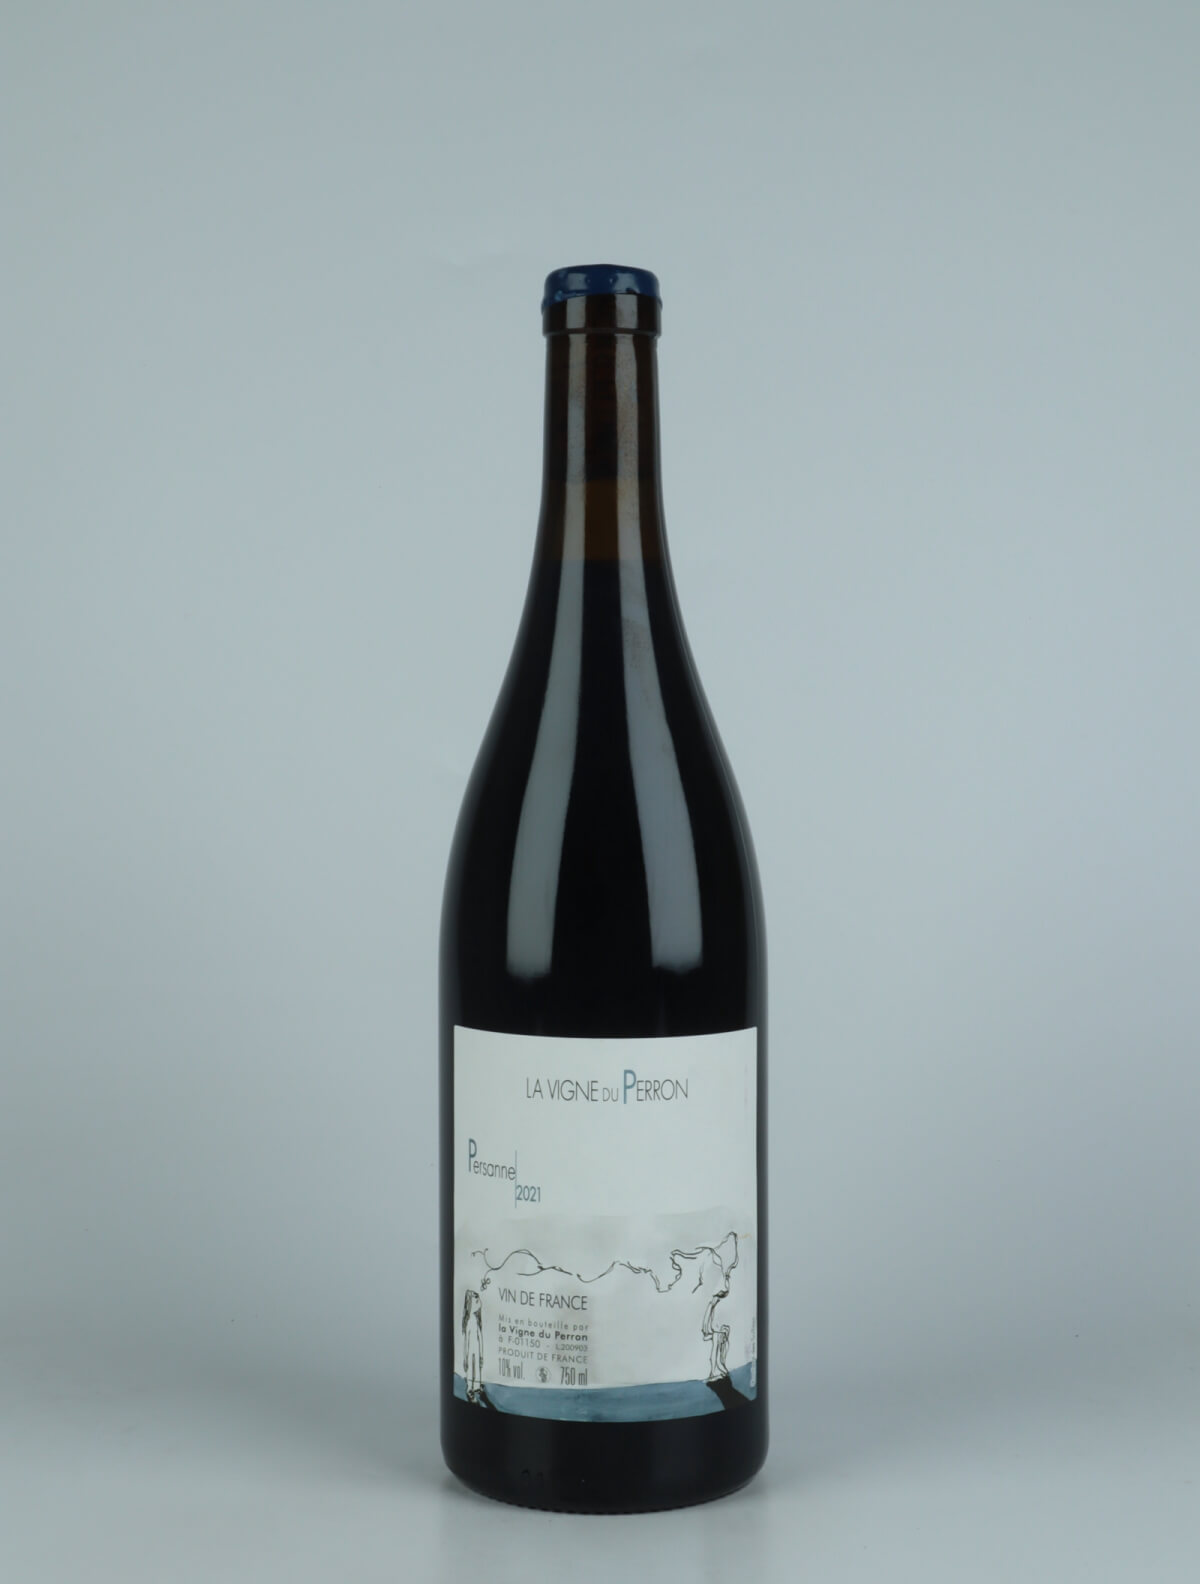 En flaske 2021 Persanne Rødvin fra Domaine du Perron, Bugey i Frankrig